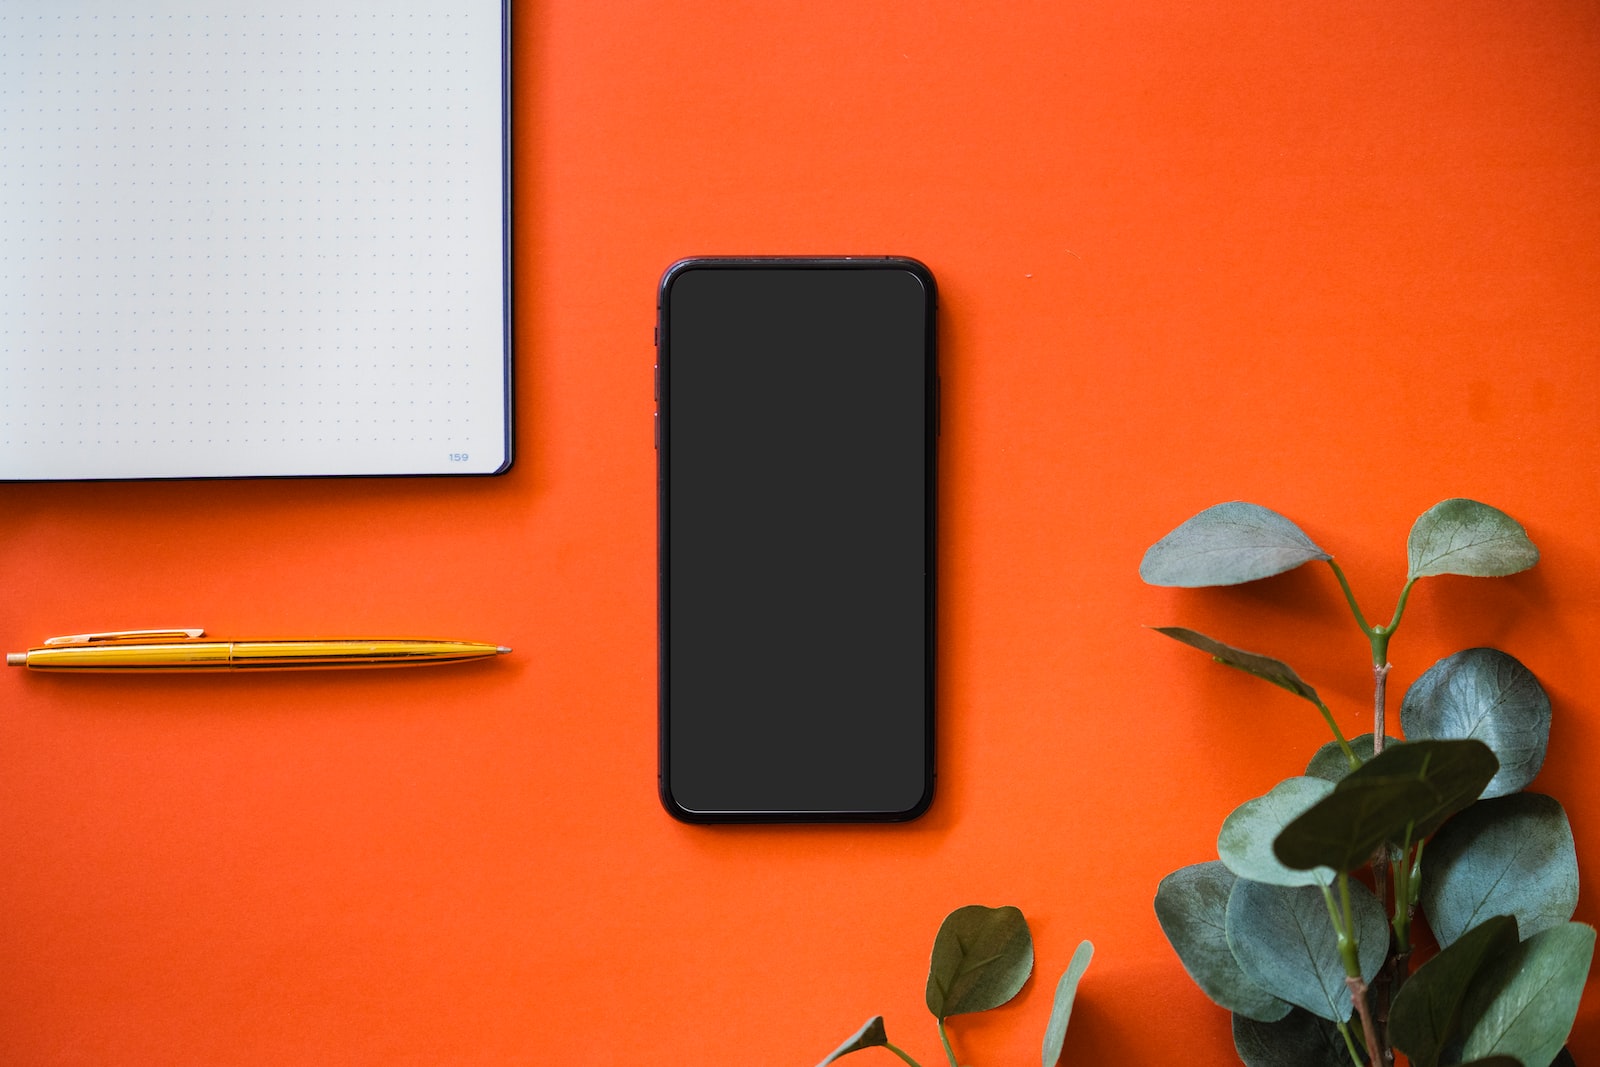 black iphone 5 on orange surface